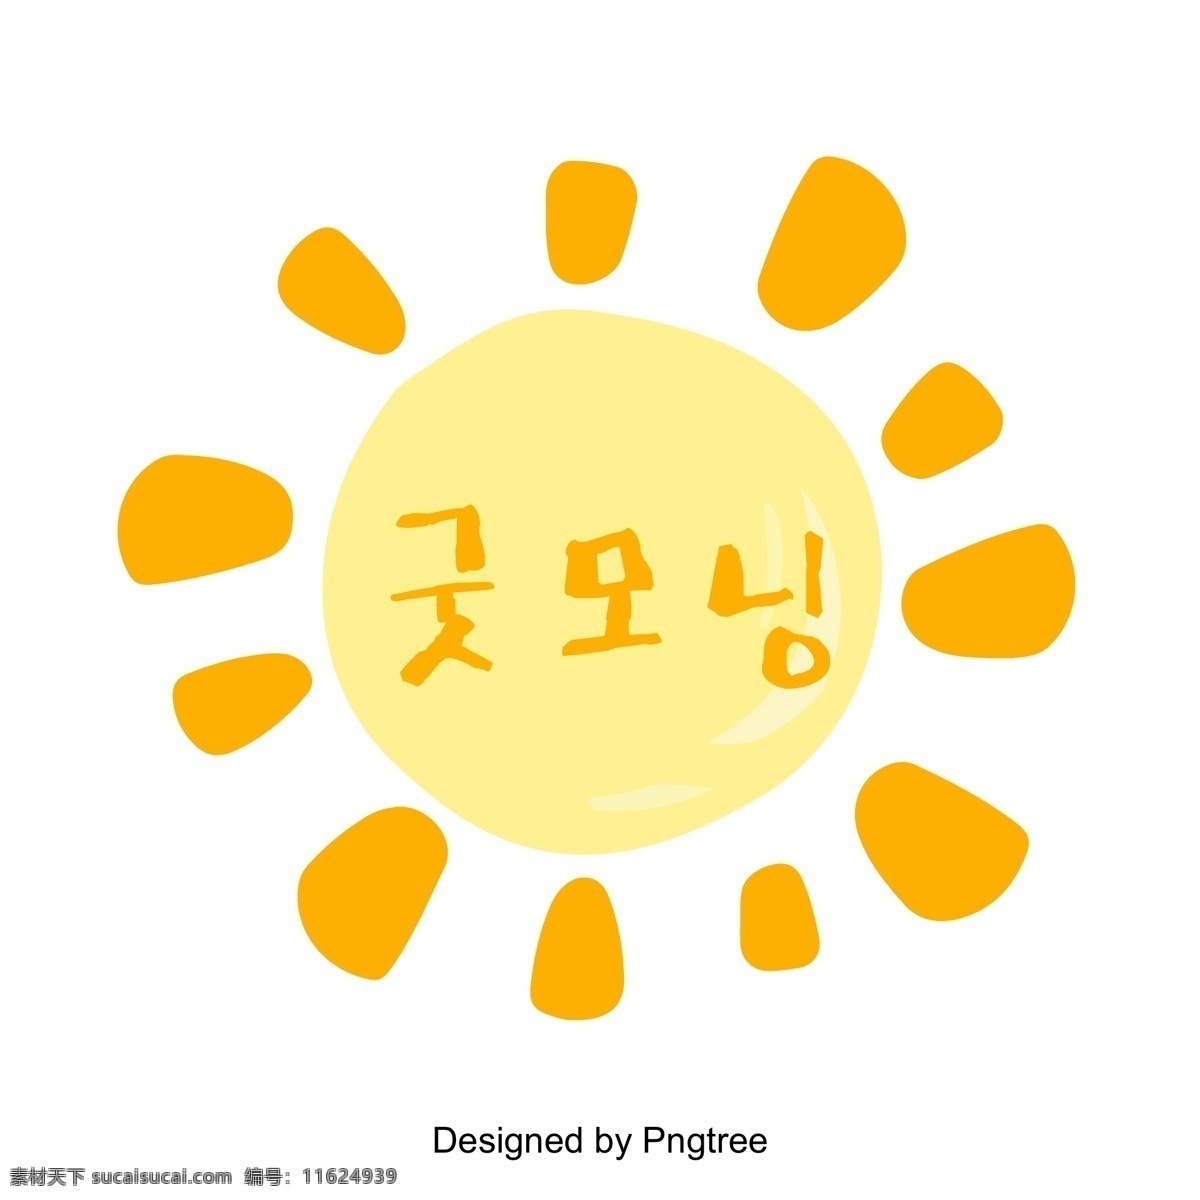 早上 好 阳光 警报 字体 早上好 抽象的设计 卡通 可爱 太阳能字体